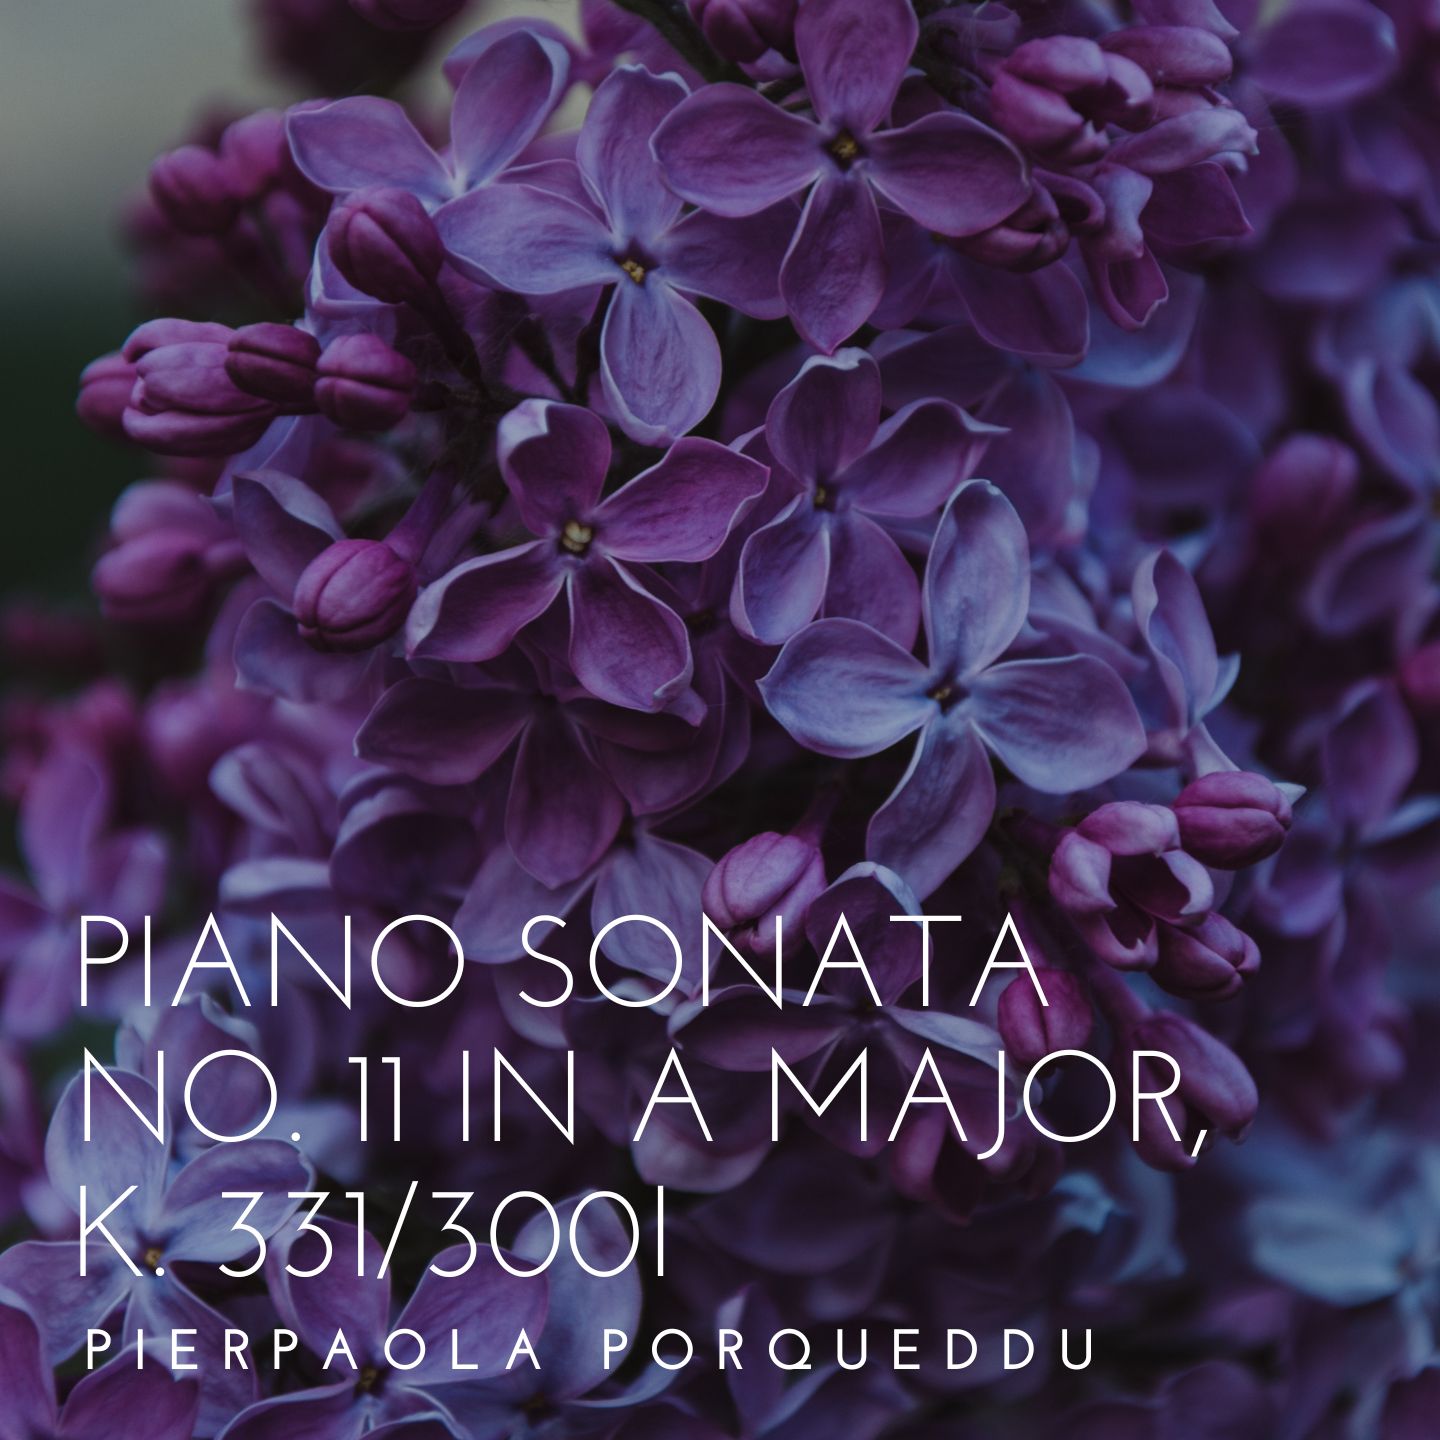 Piano Sonata No. 11 in A major, K. 331/300i